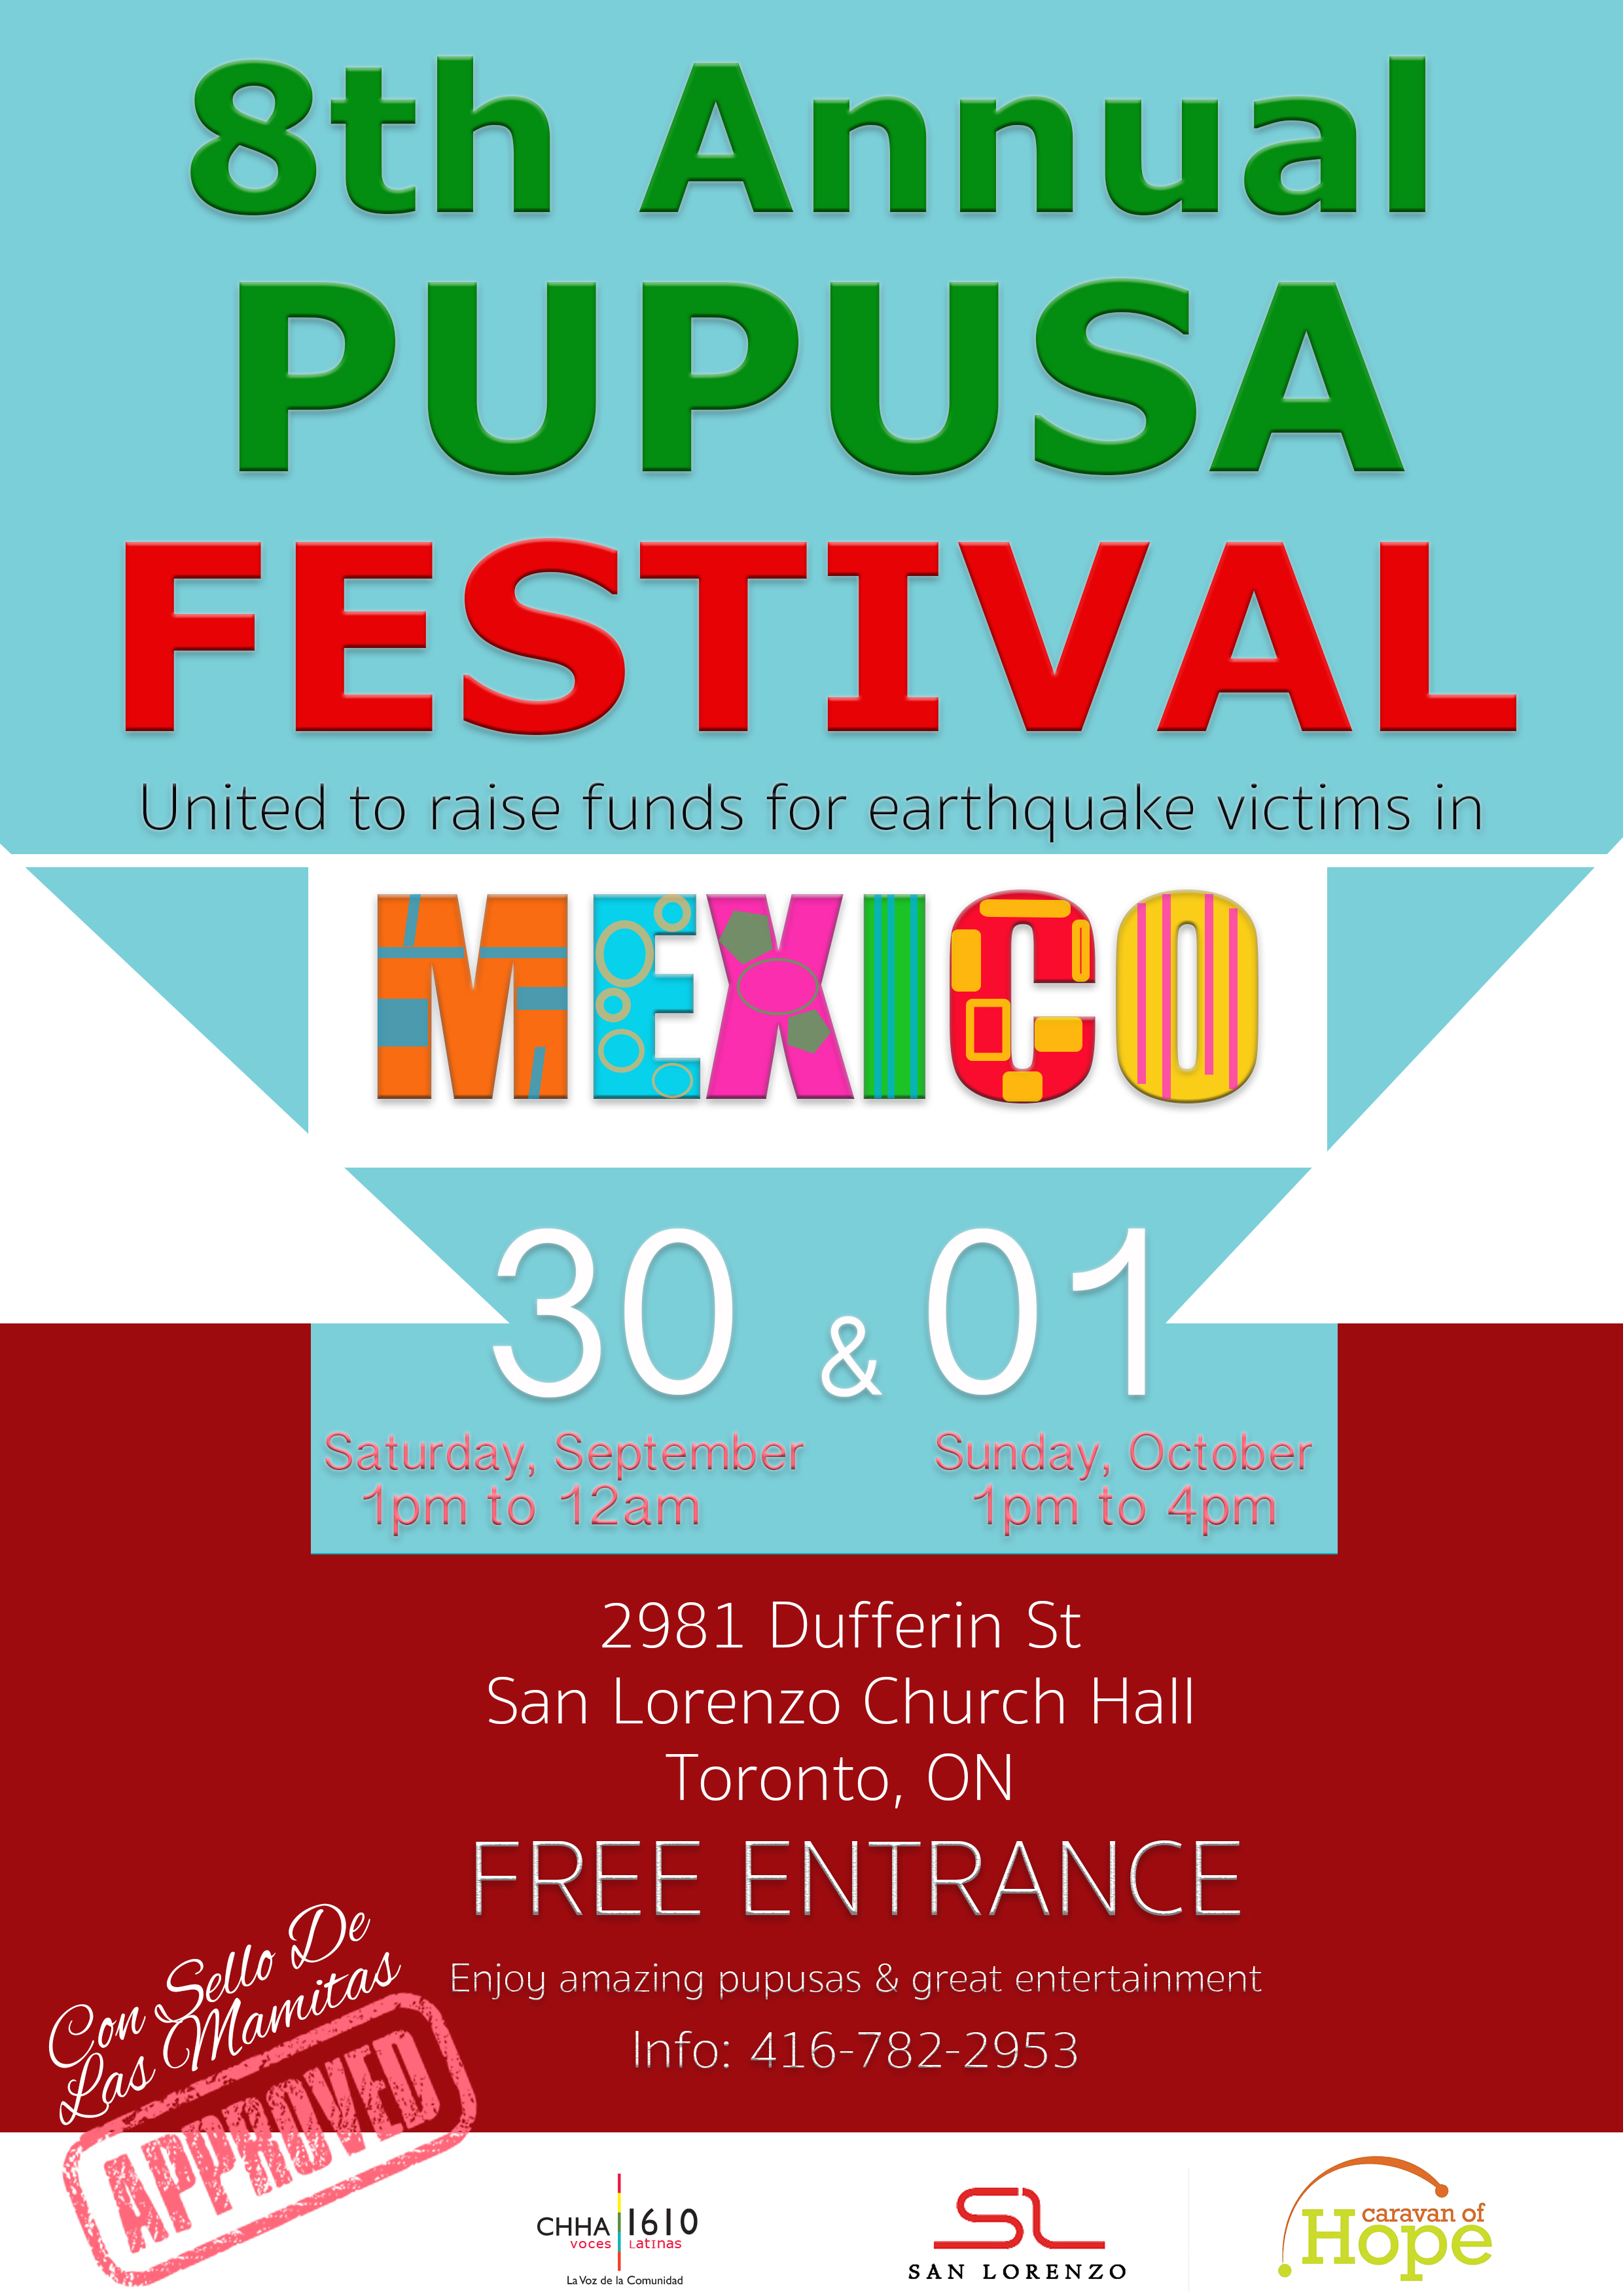 Festival de la Pupusa 2017 se realiza en solidaridad con México